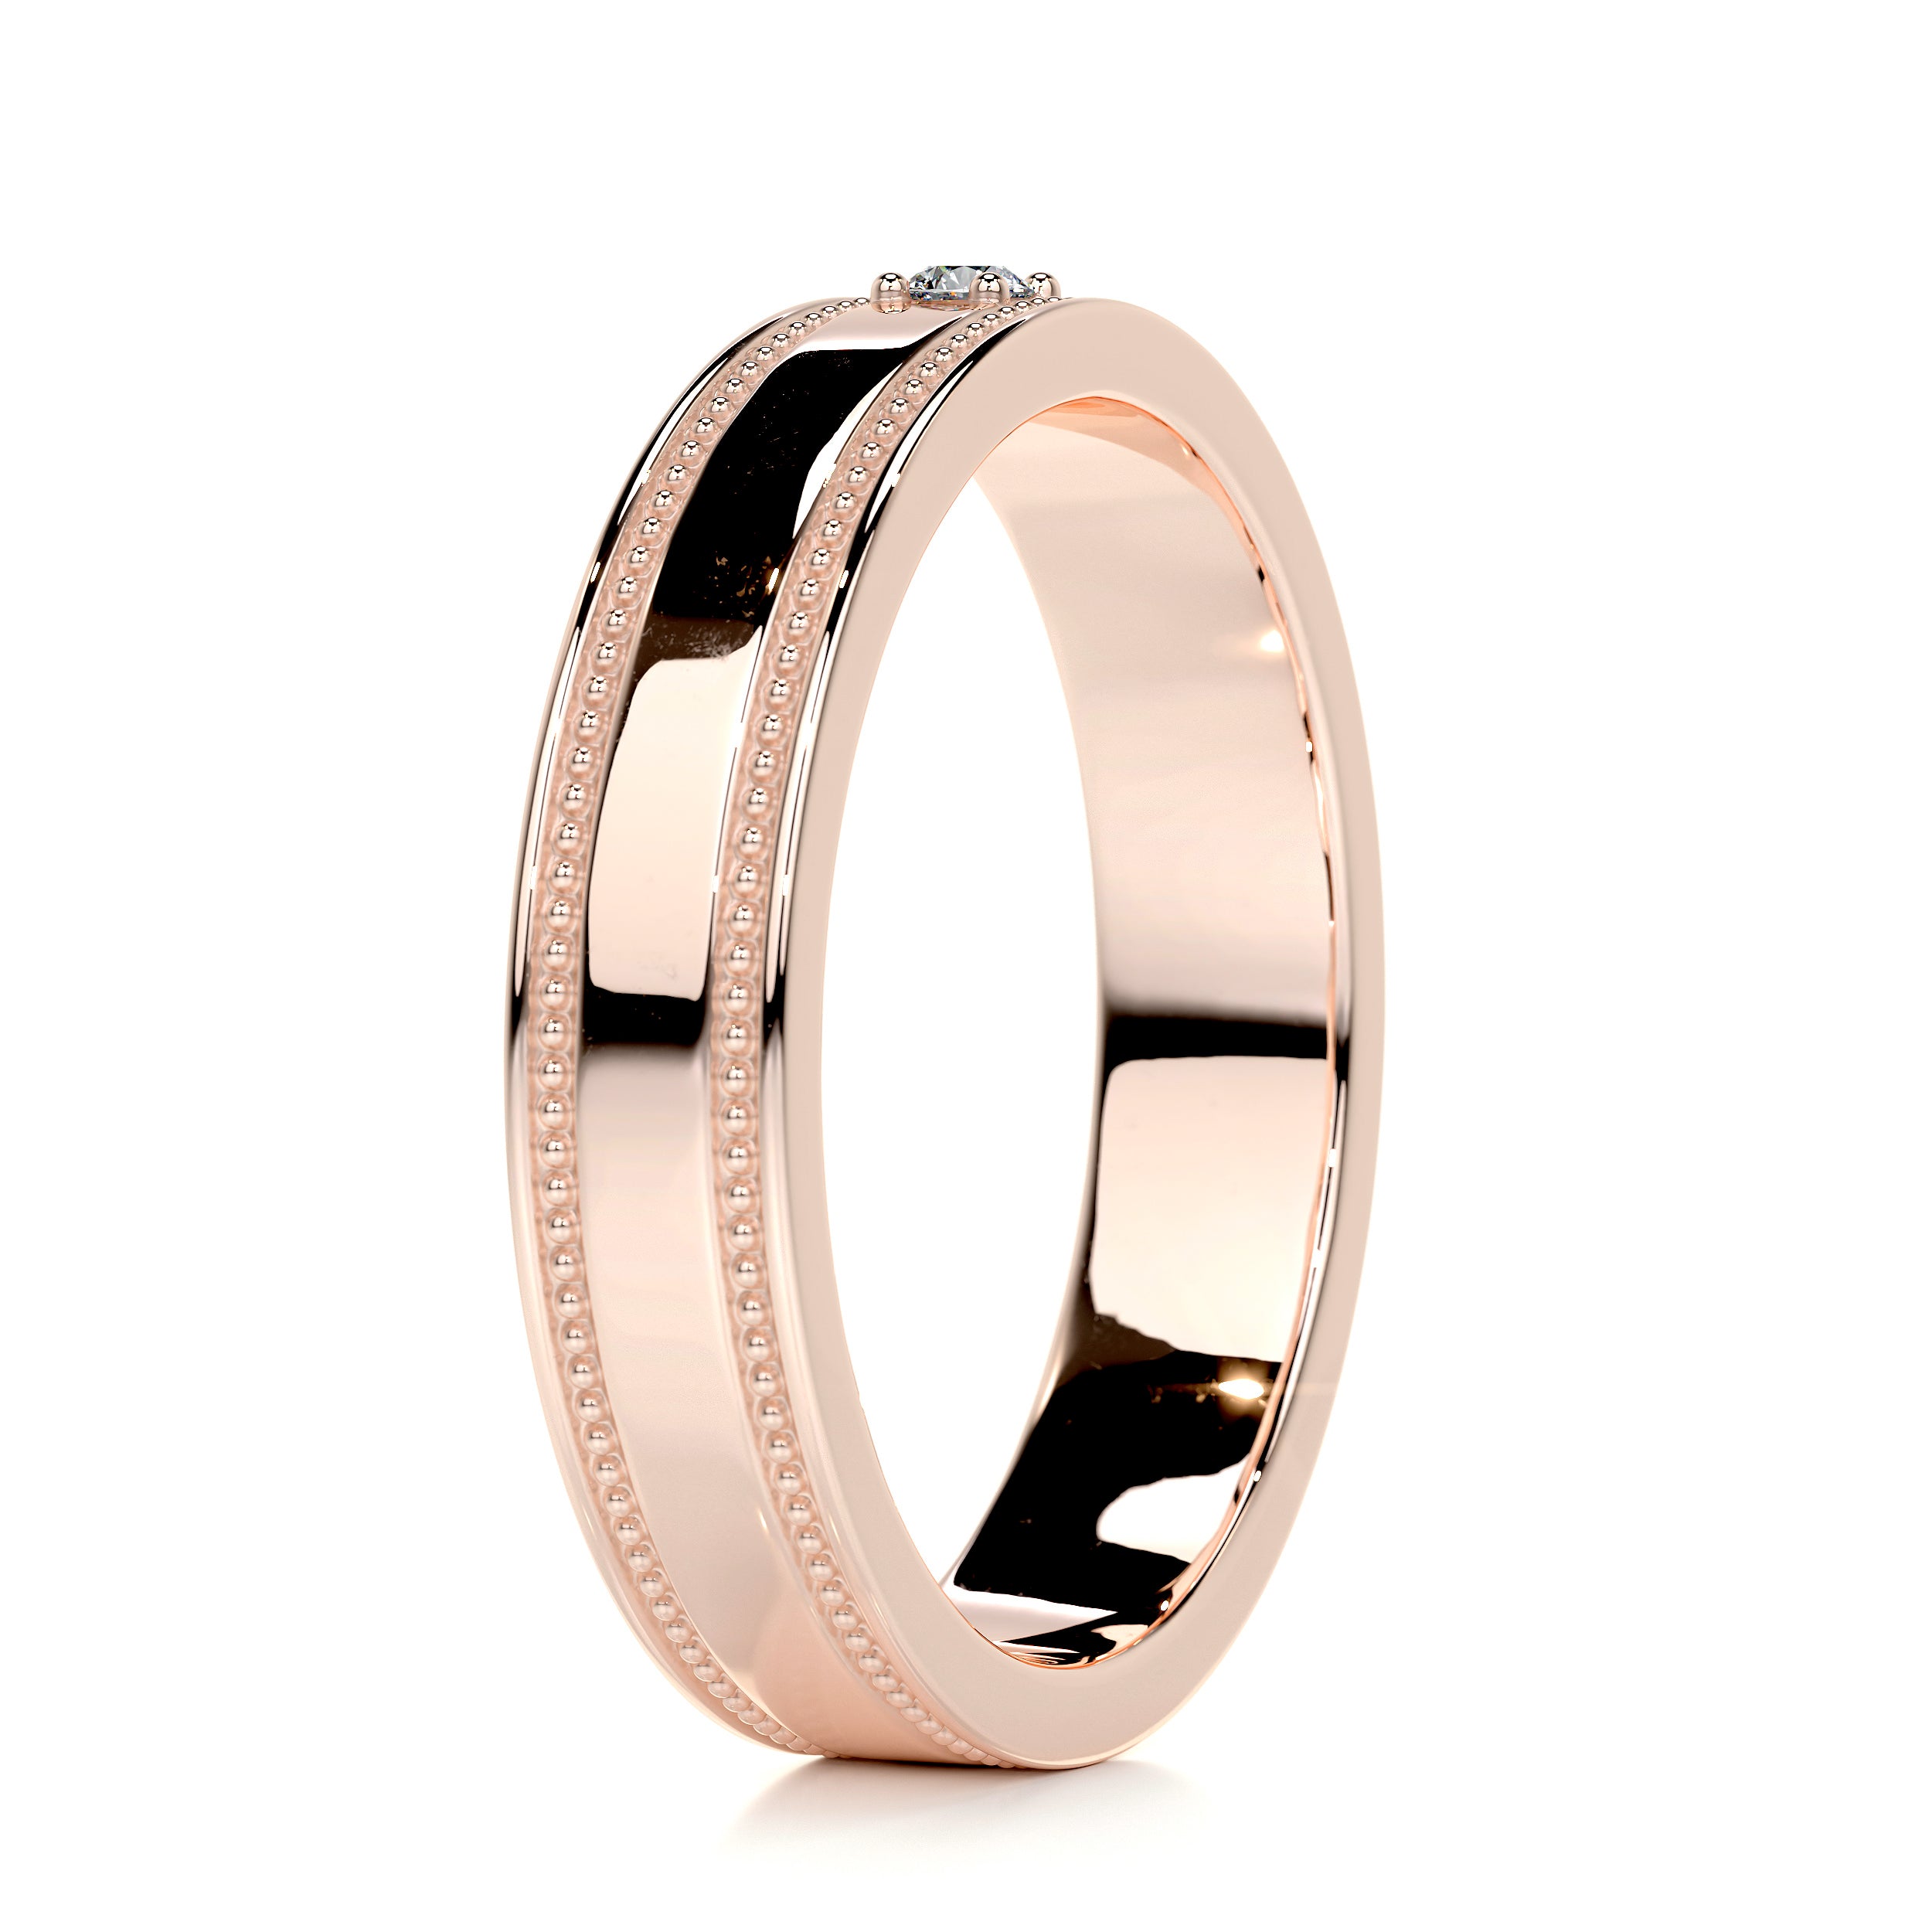 Sherry Diamond Wedding Ring   (0.02 Carat) -14K Rose Gold